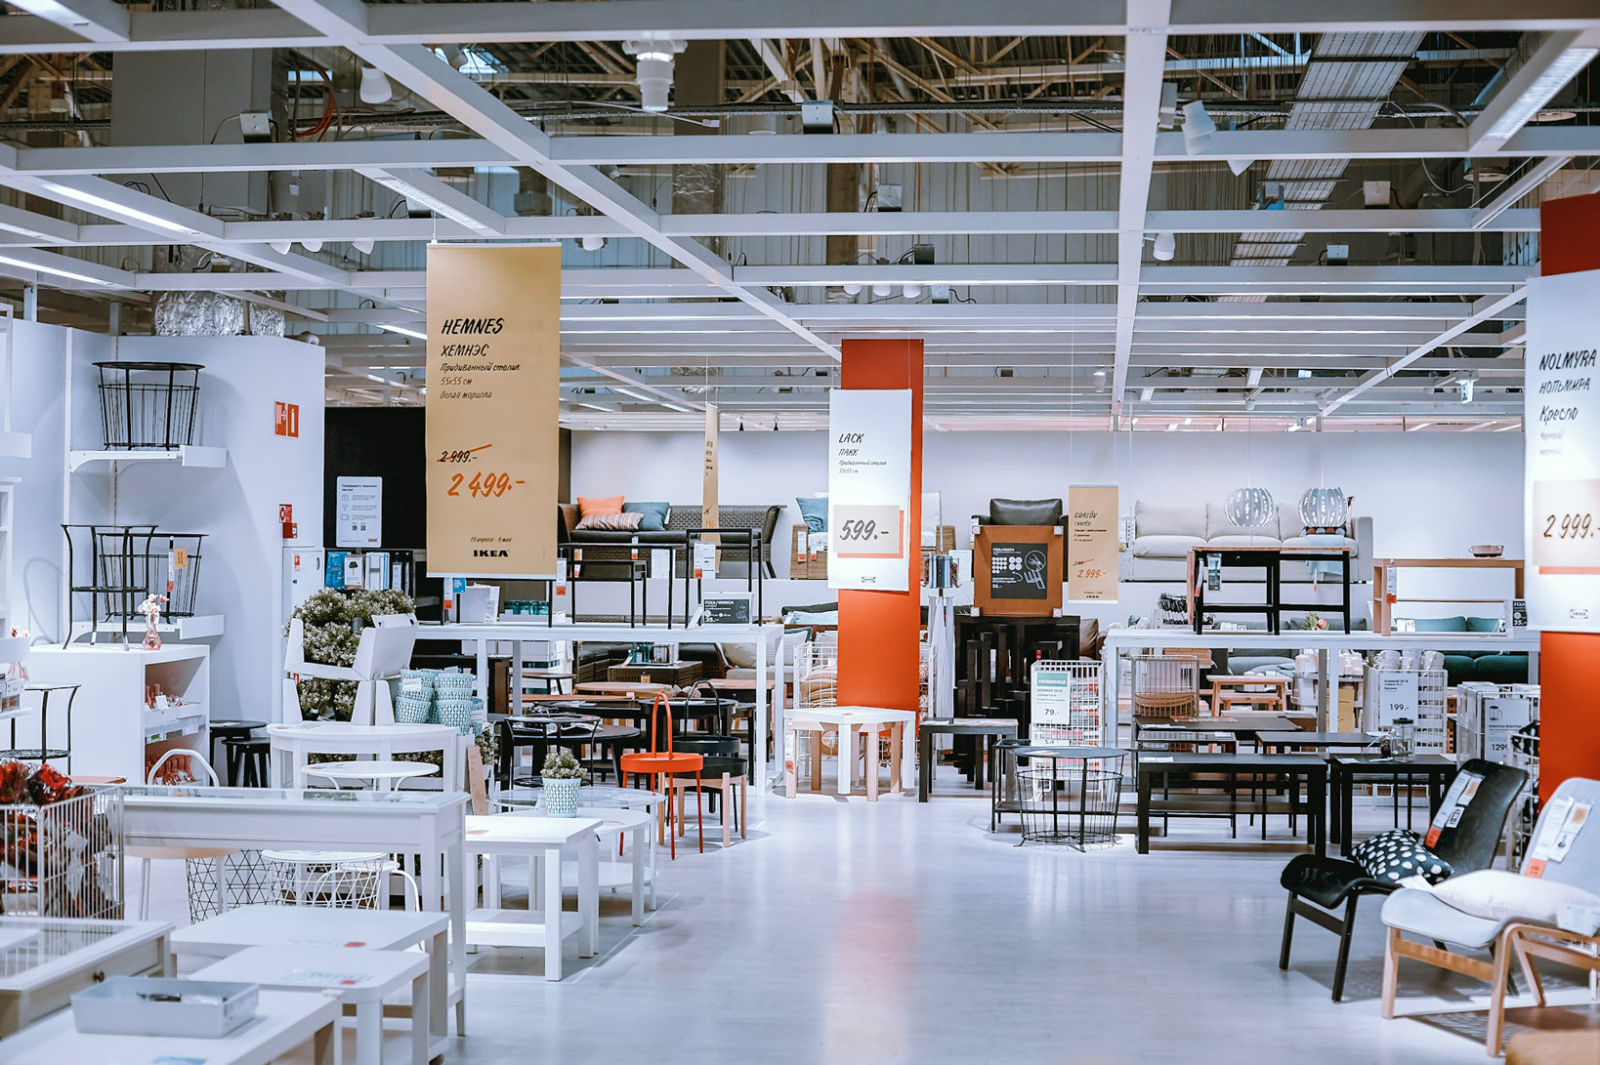 Nhân viên ở IKEA tiết lộ 6 mẹo trong nội bộ giúp khách hàng mua sắm tối ưu và tiết kiệm nhất - Ảnh 4.